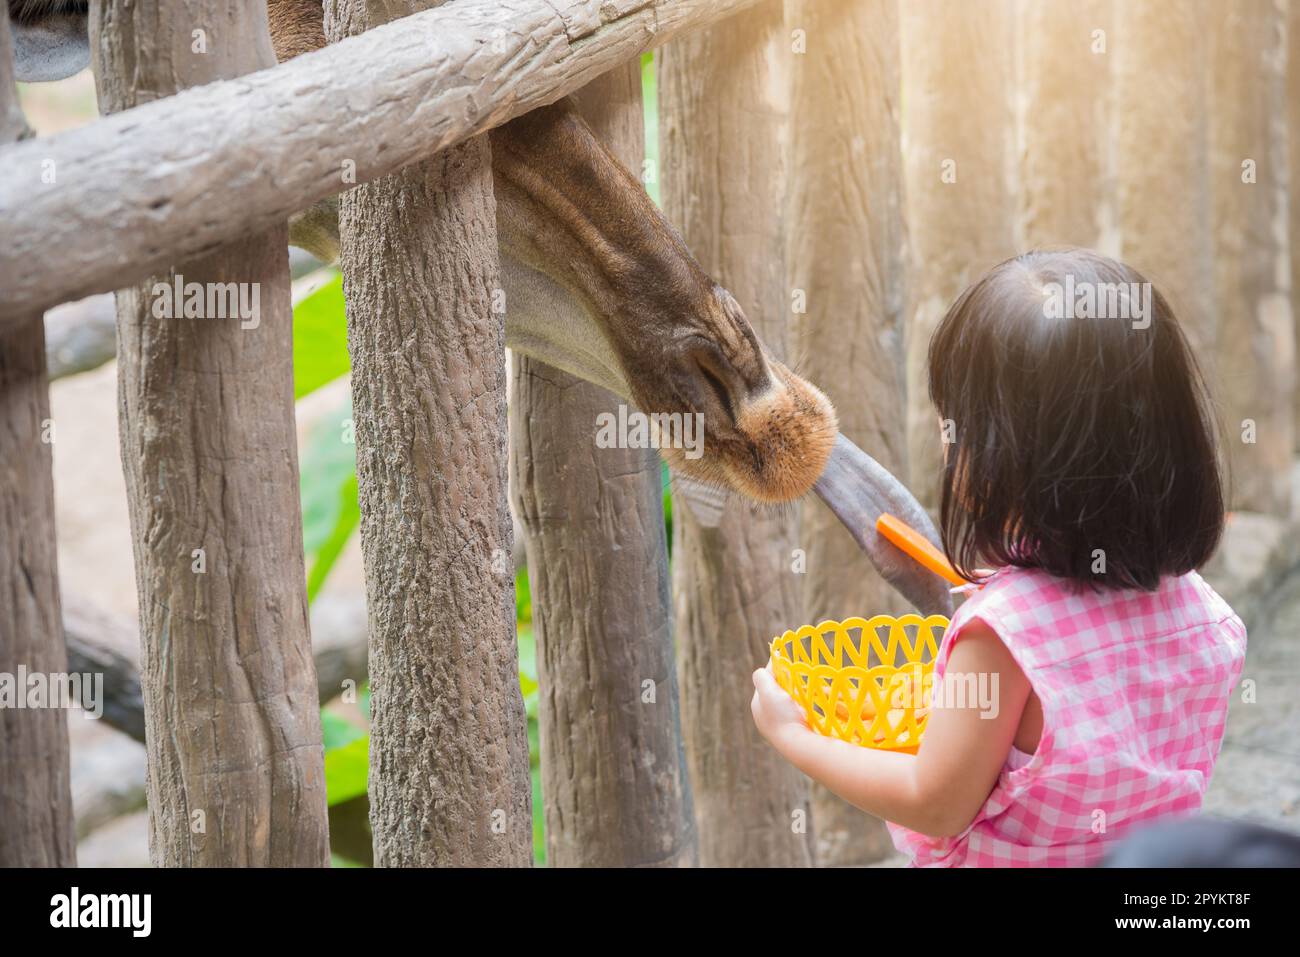 La Giraffe a reçu de la nourriture de petite fille avec la relation douce Banque D'Images